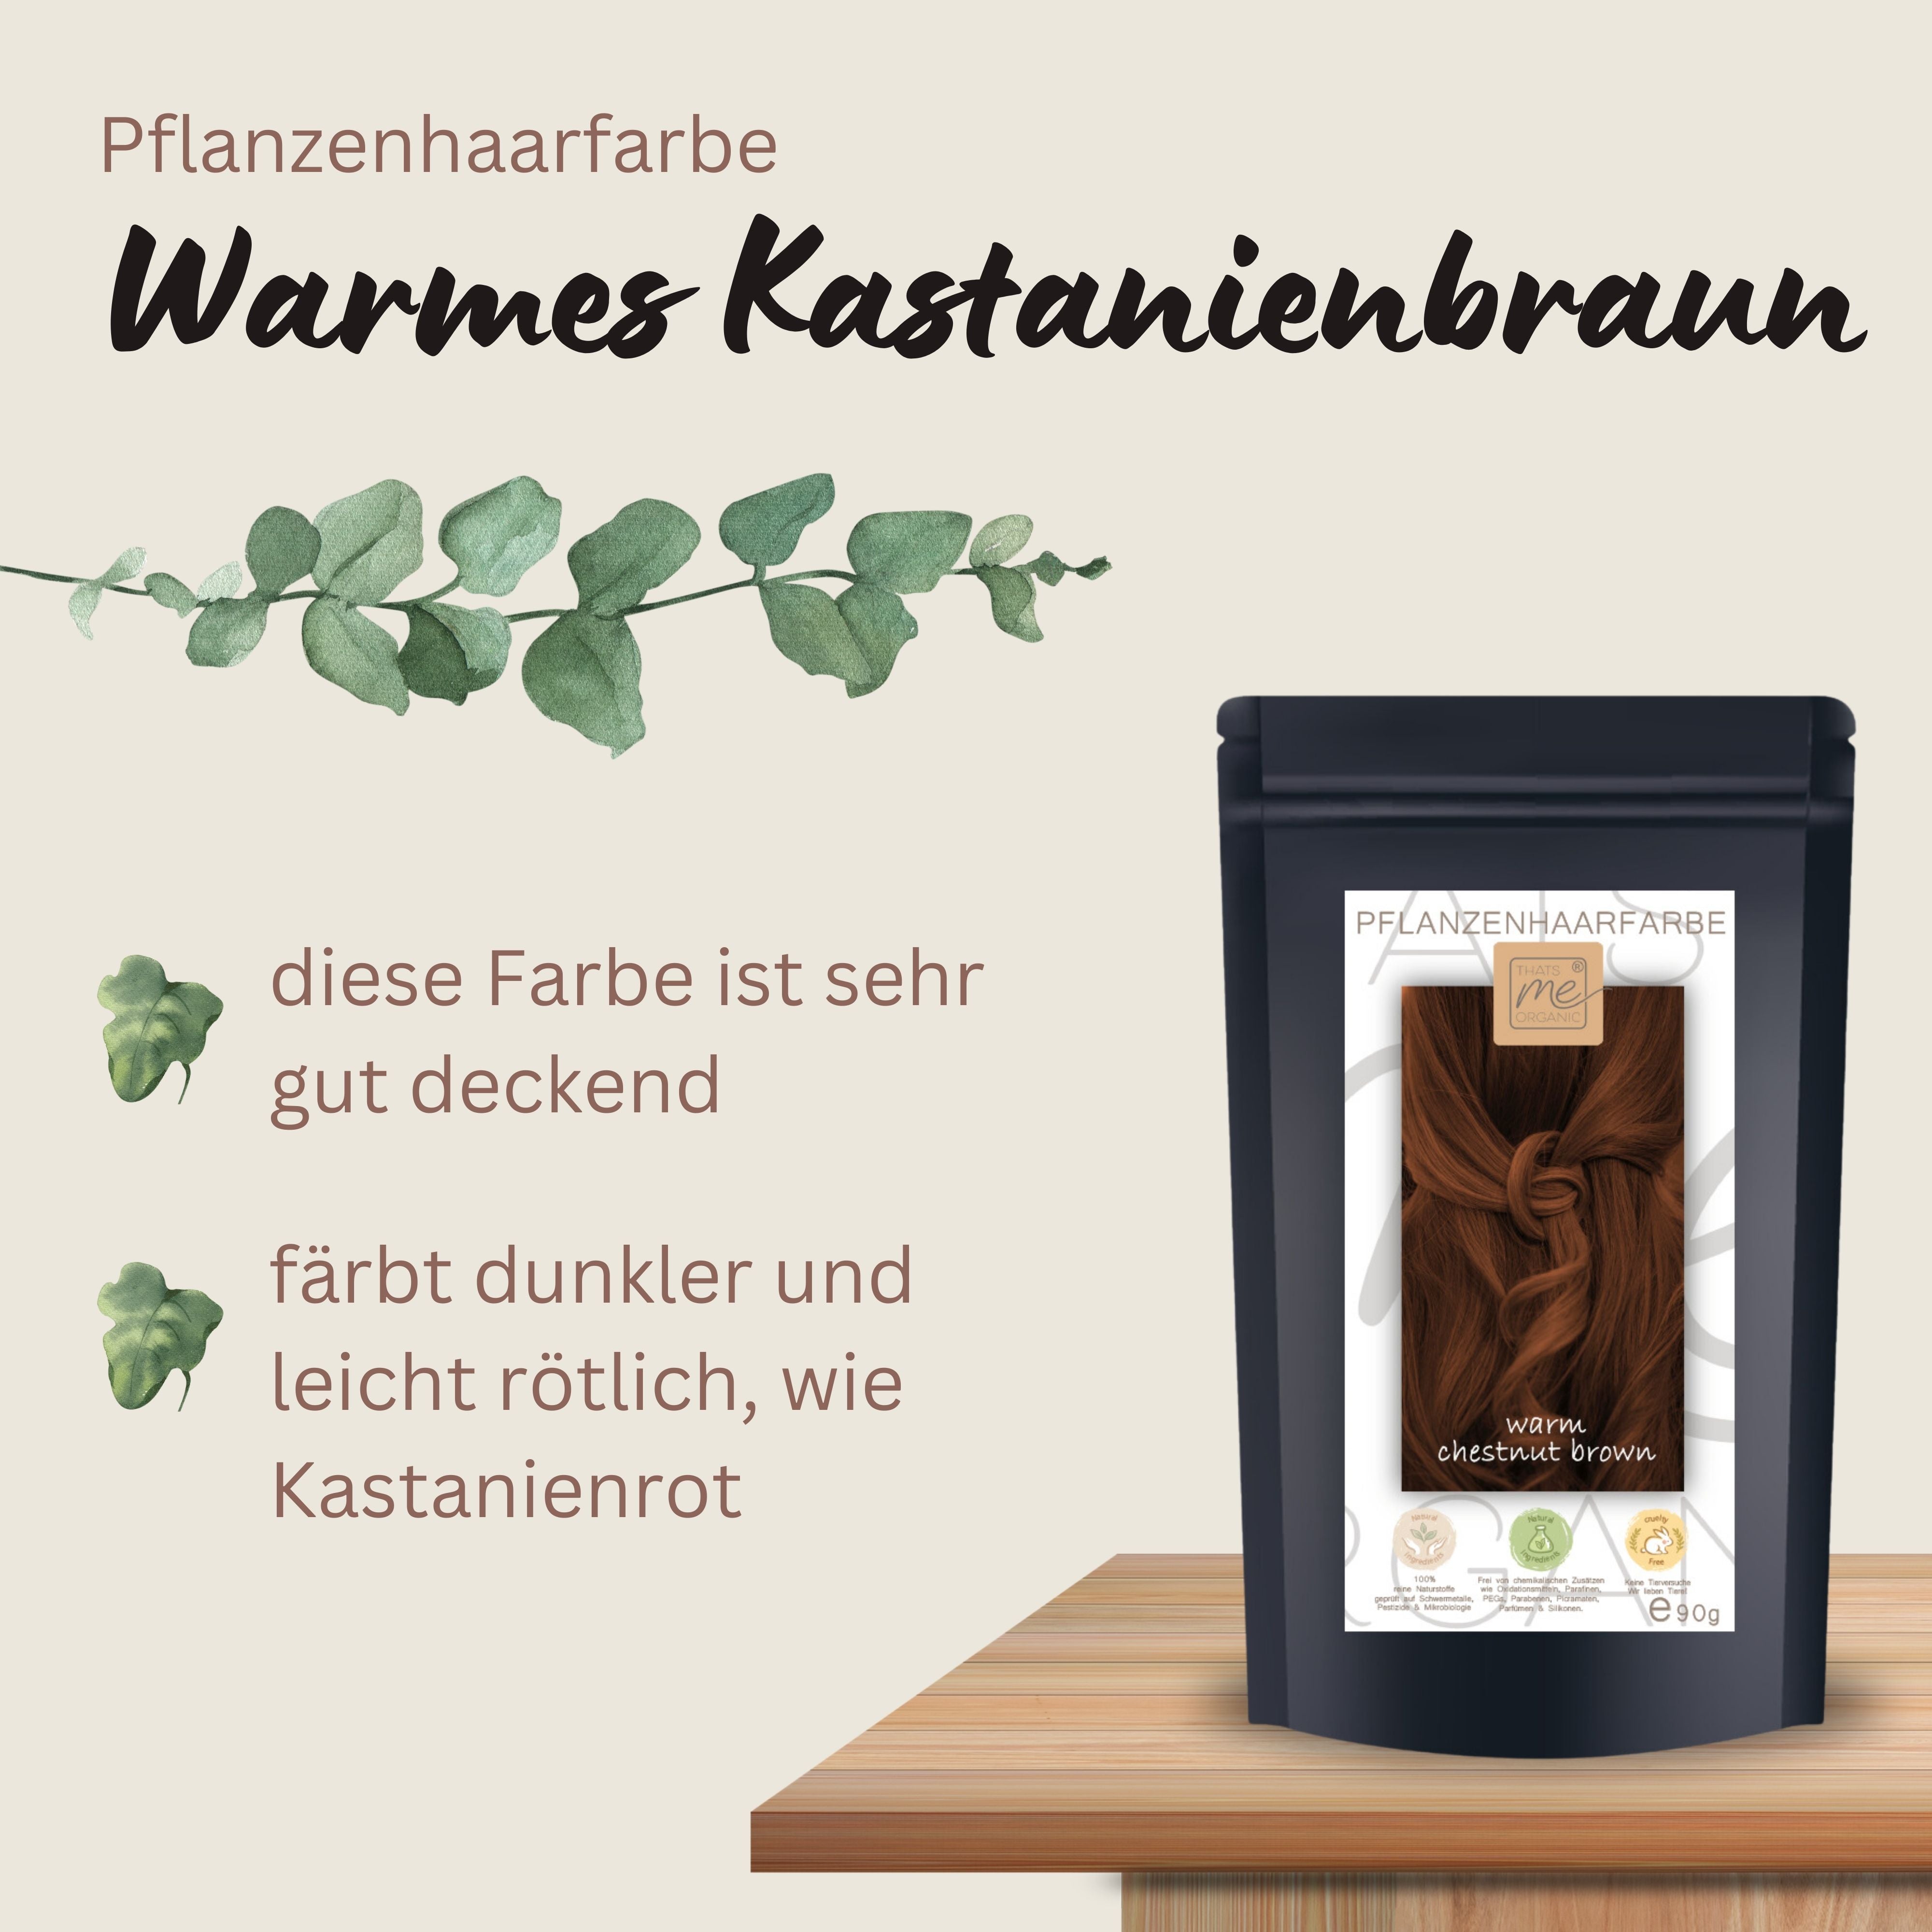 Profi-Pflanzenhaarfarbe SET "warmes Kastanien braun - warm chestnut brown"